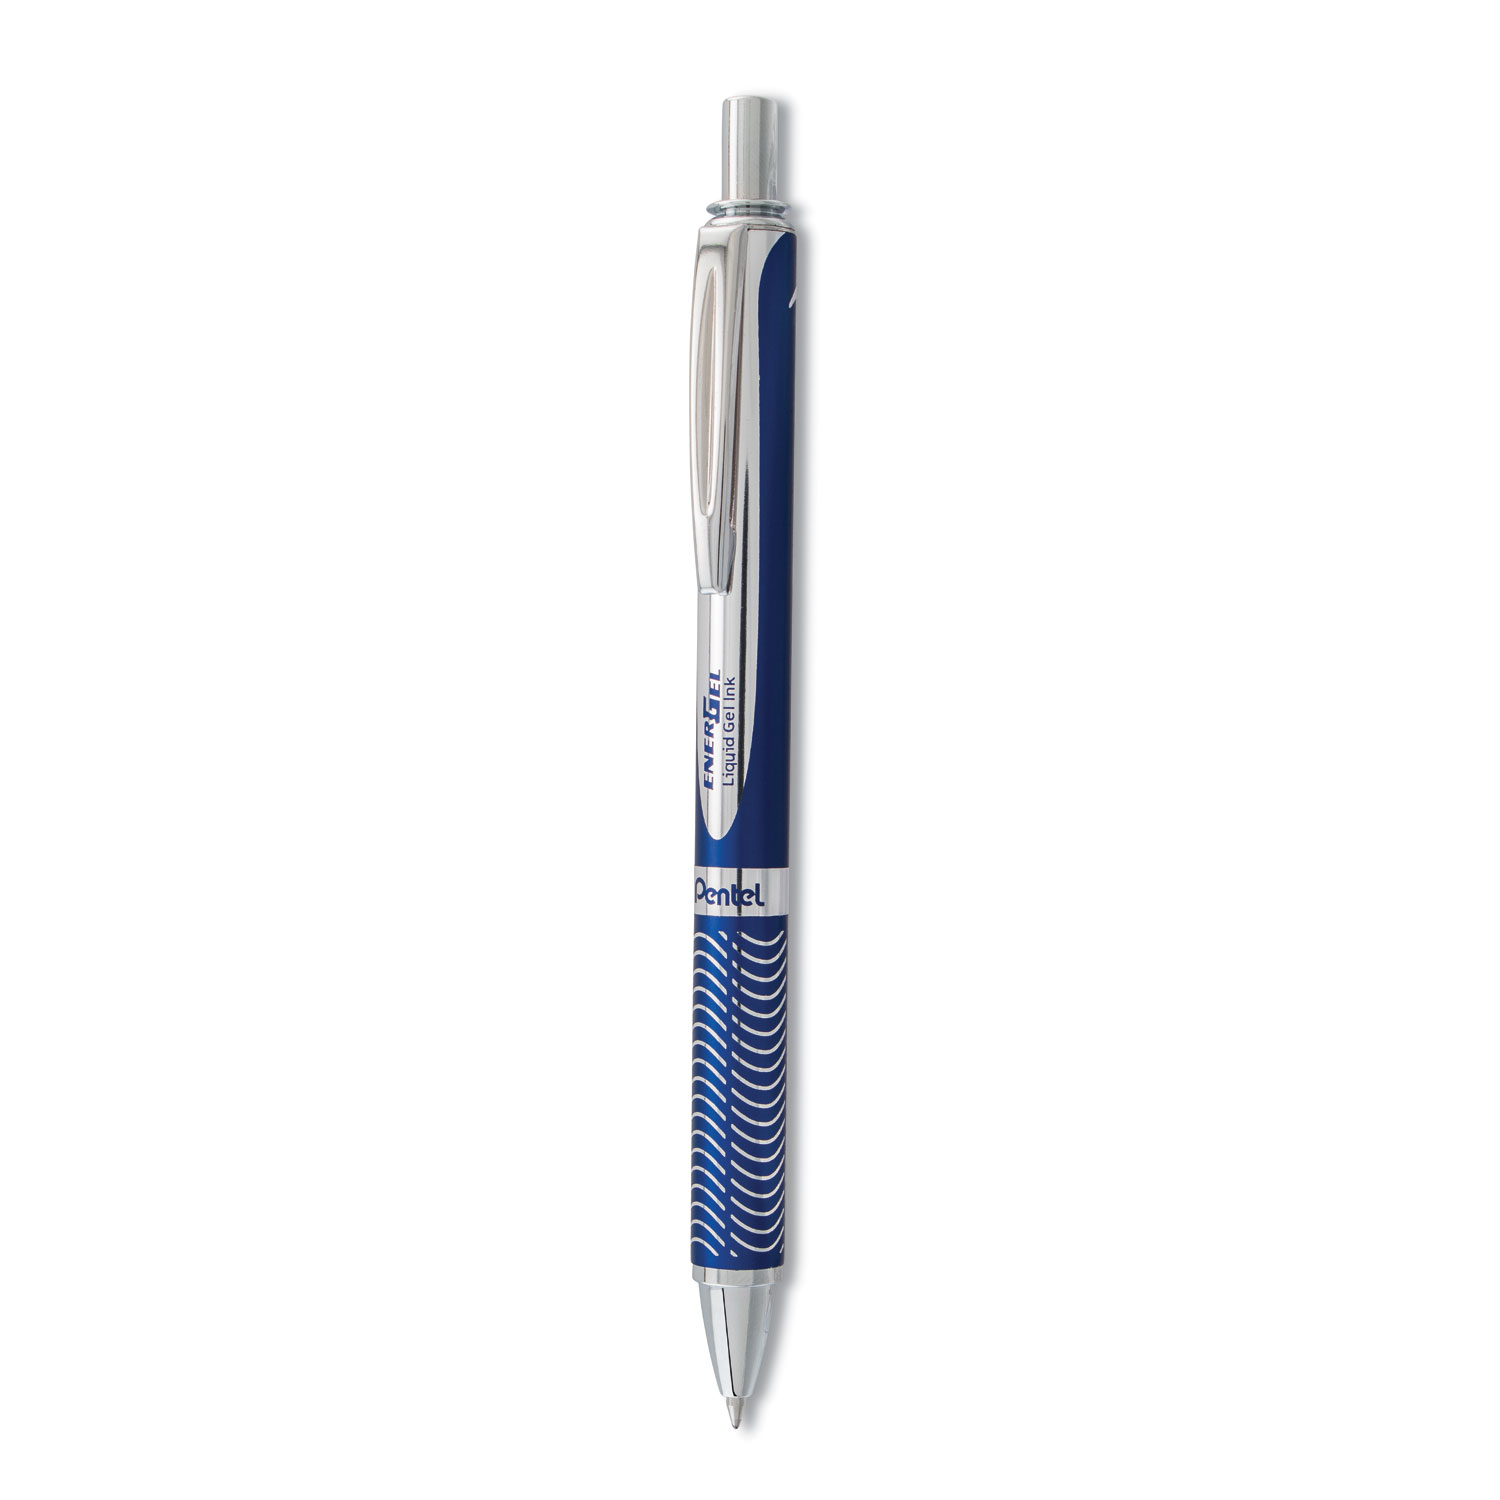  Pentel BL407C-A EnerGel Alloy RT Retractable Gel Pen, Medium 0.7mm, Black Ink, Blue Barrel (PENBL407CA) 